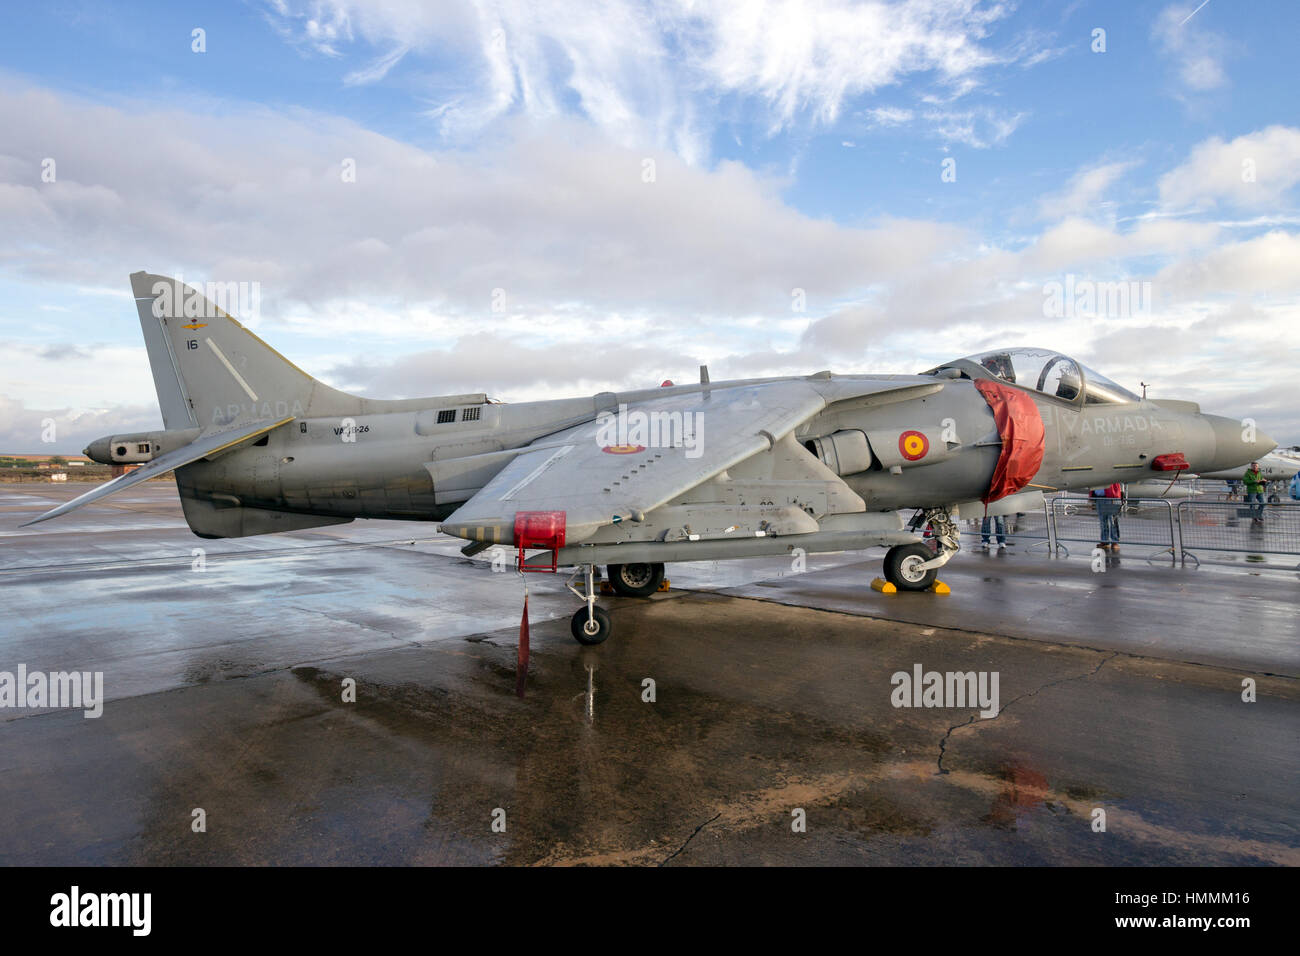 TORREJON, ESPAGNE - OCT 11, 2014 : chasseur Harrier de la marine espagnole sur le tarmac de la base aérienne de Torrejon. Banque D'Images